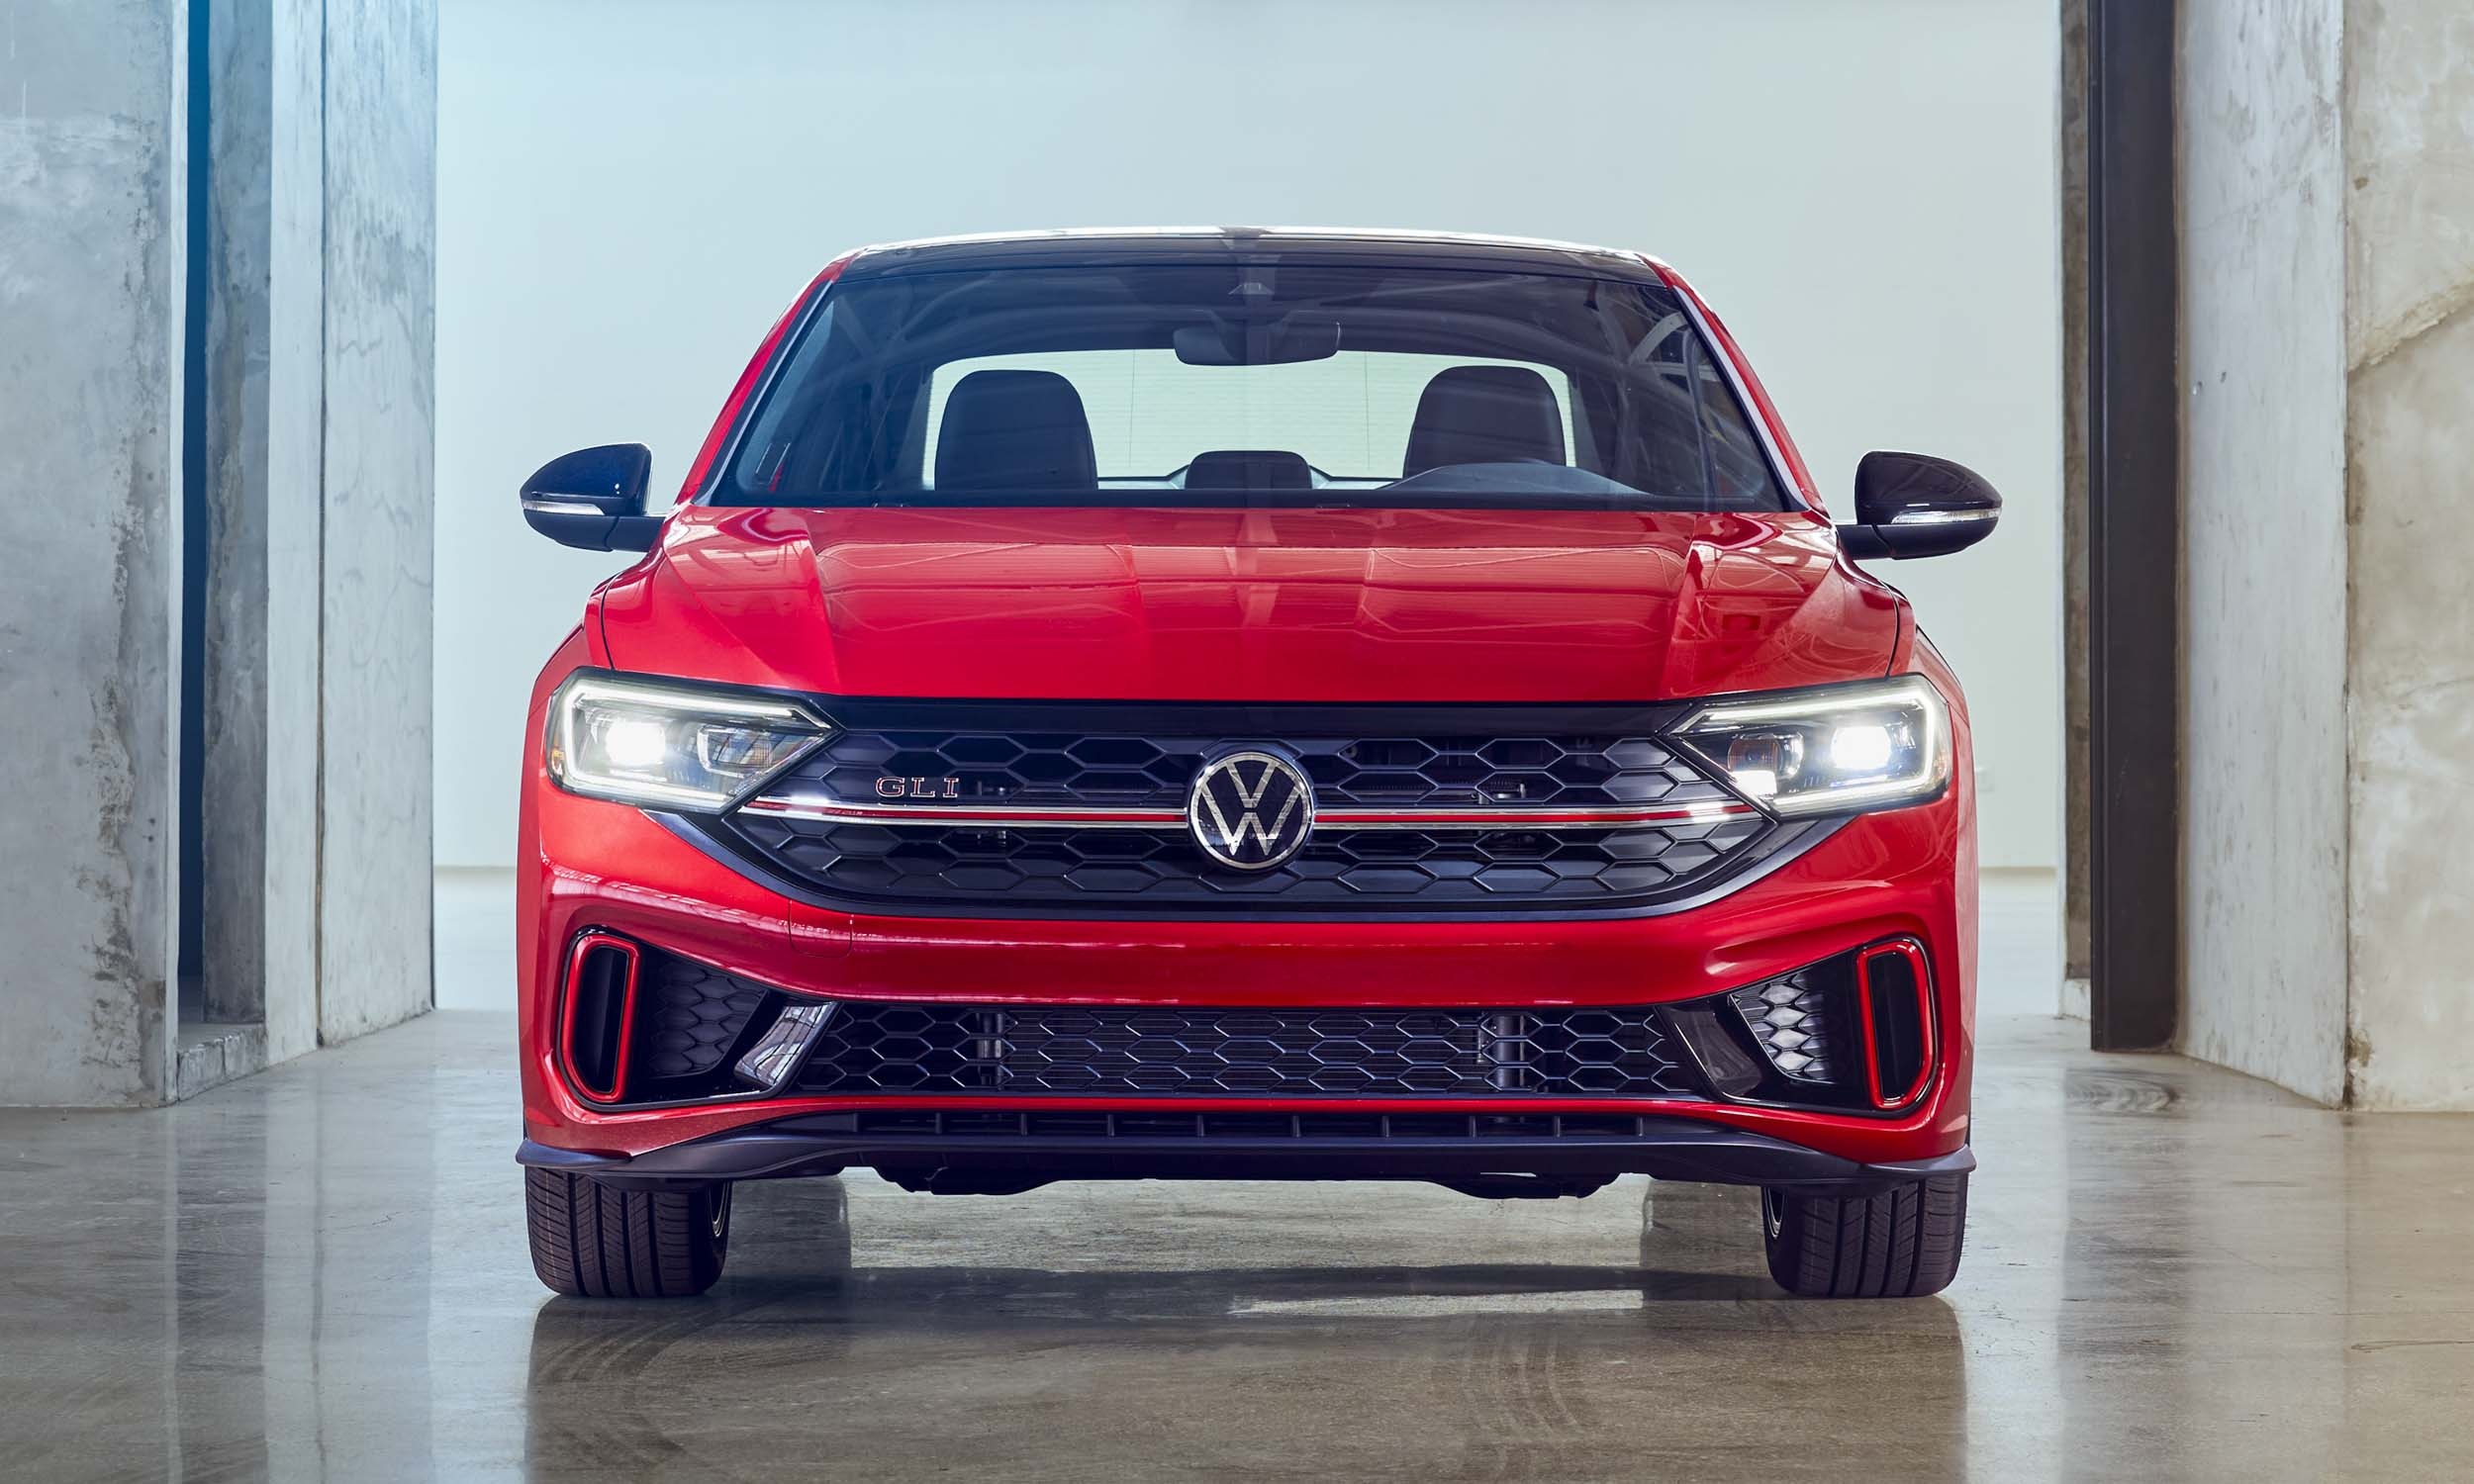 Volkswagen Jetta, First look, 2022 model, Preview, 2500x1500 HD Desktop